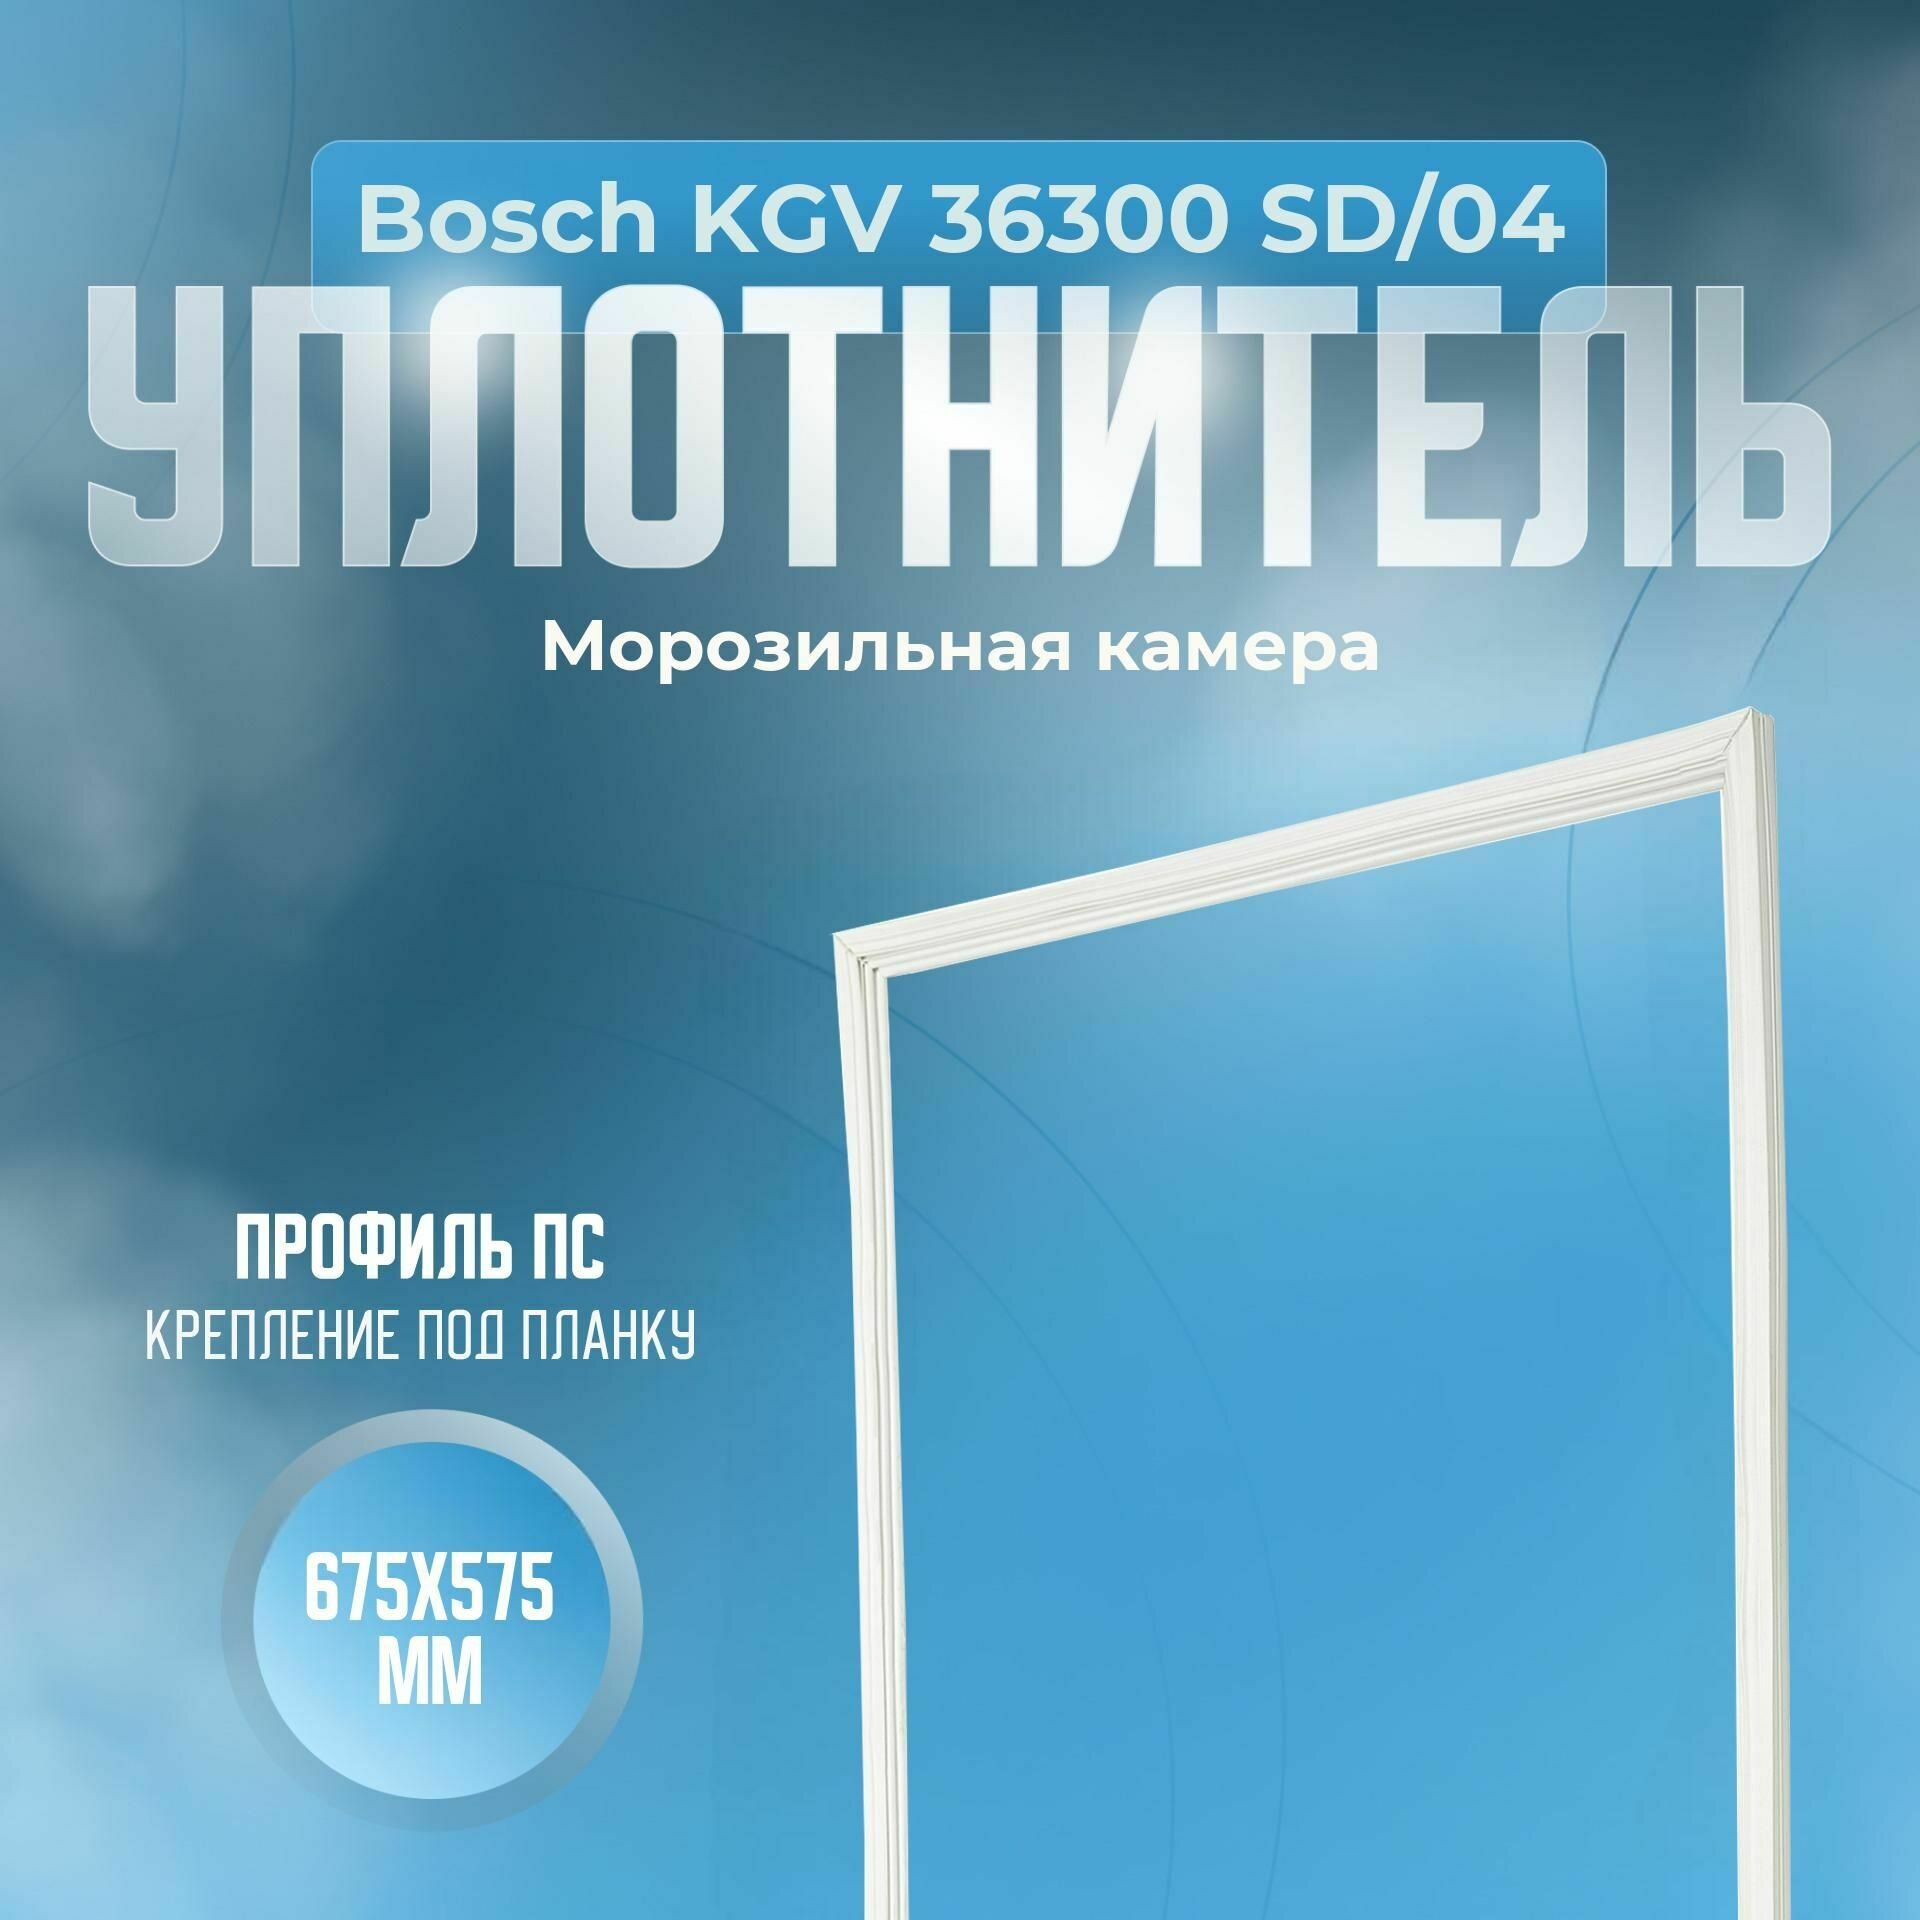 Уплотнитель Bosch KGV 36300 SD/04. м. к, Размер - 675х575 мм. ПС